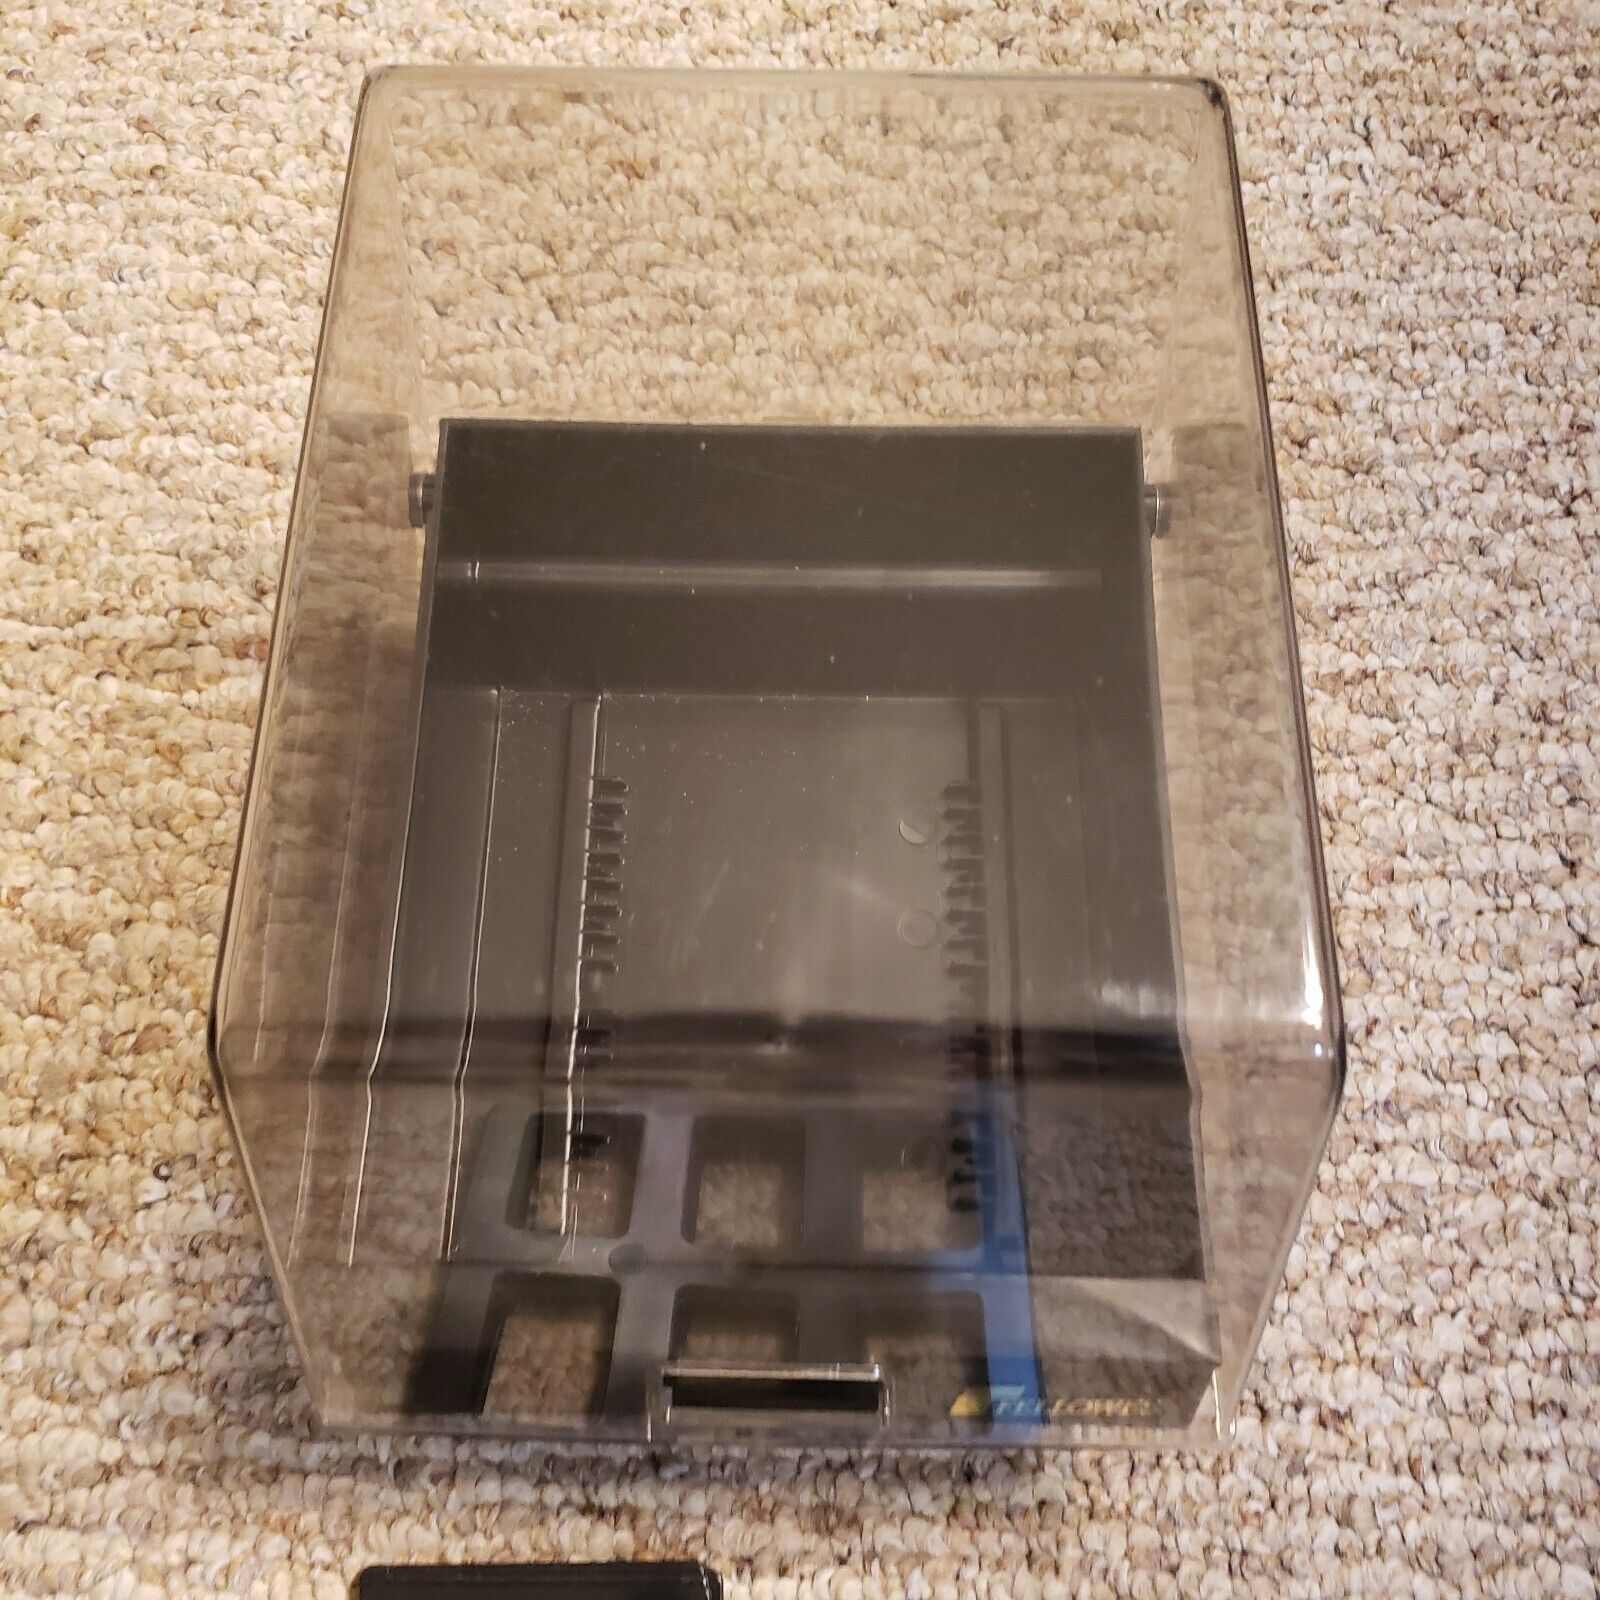 VINTAGE FELLOWES 5 1/4” Floppy Disk Storage Case Box Organizer w/ Dividers